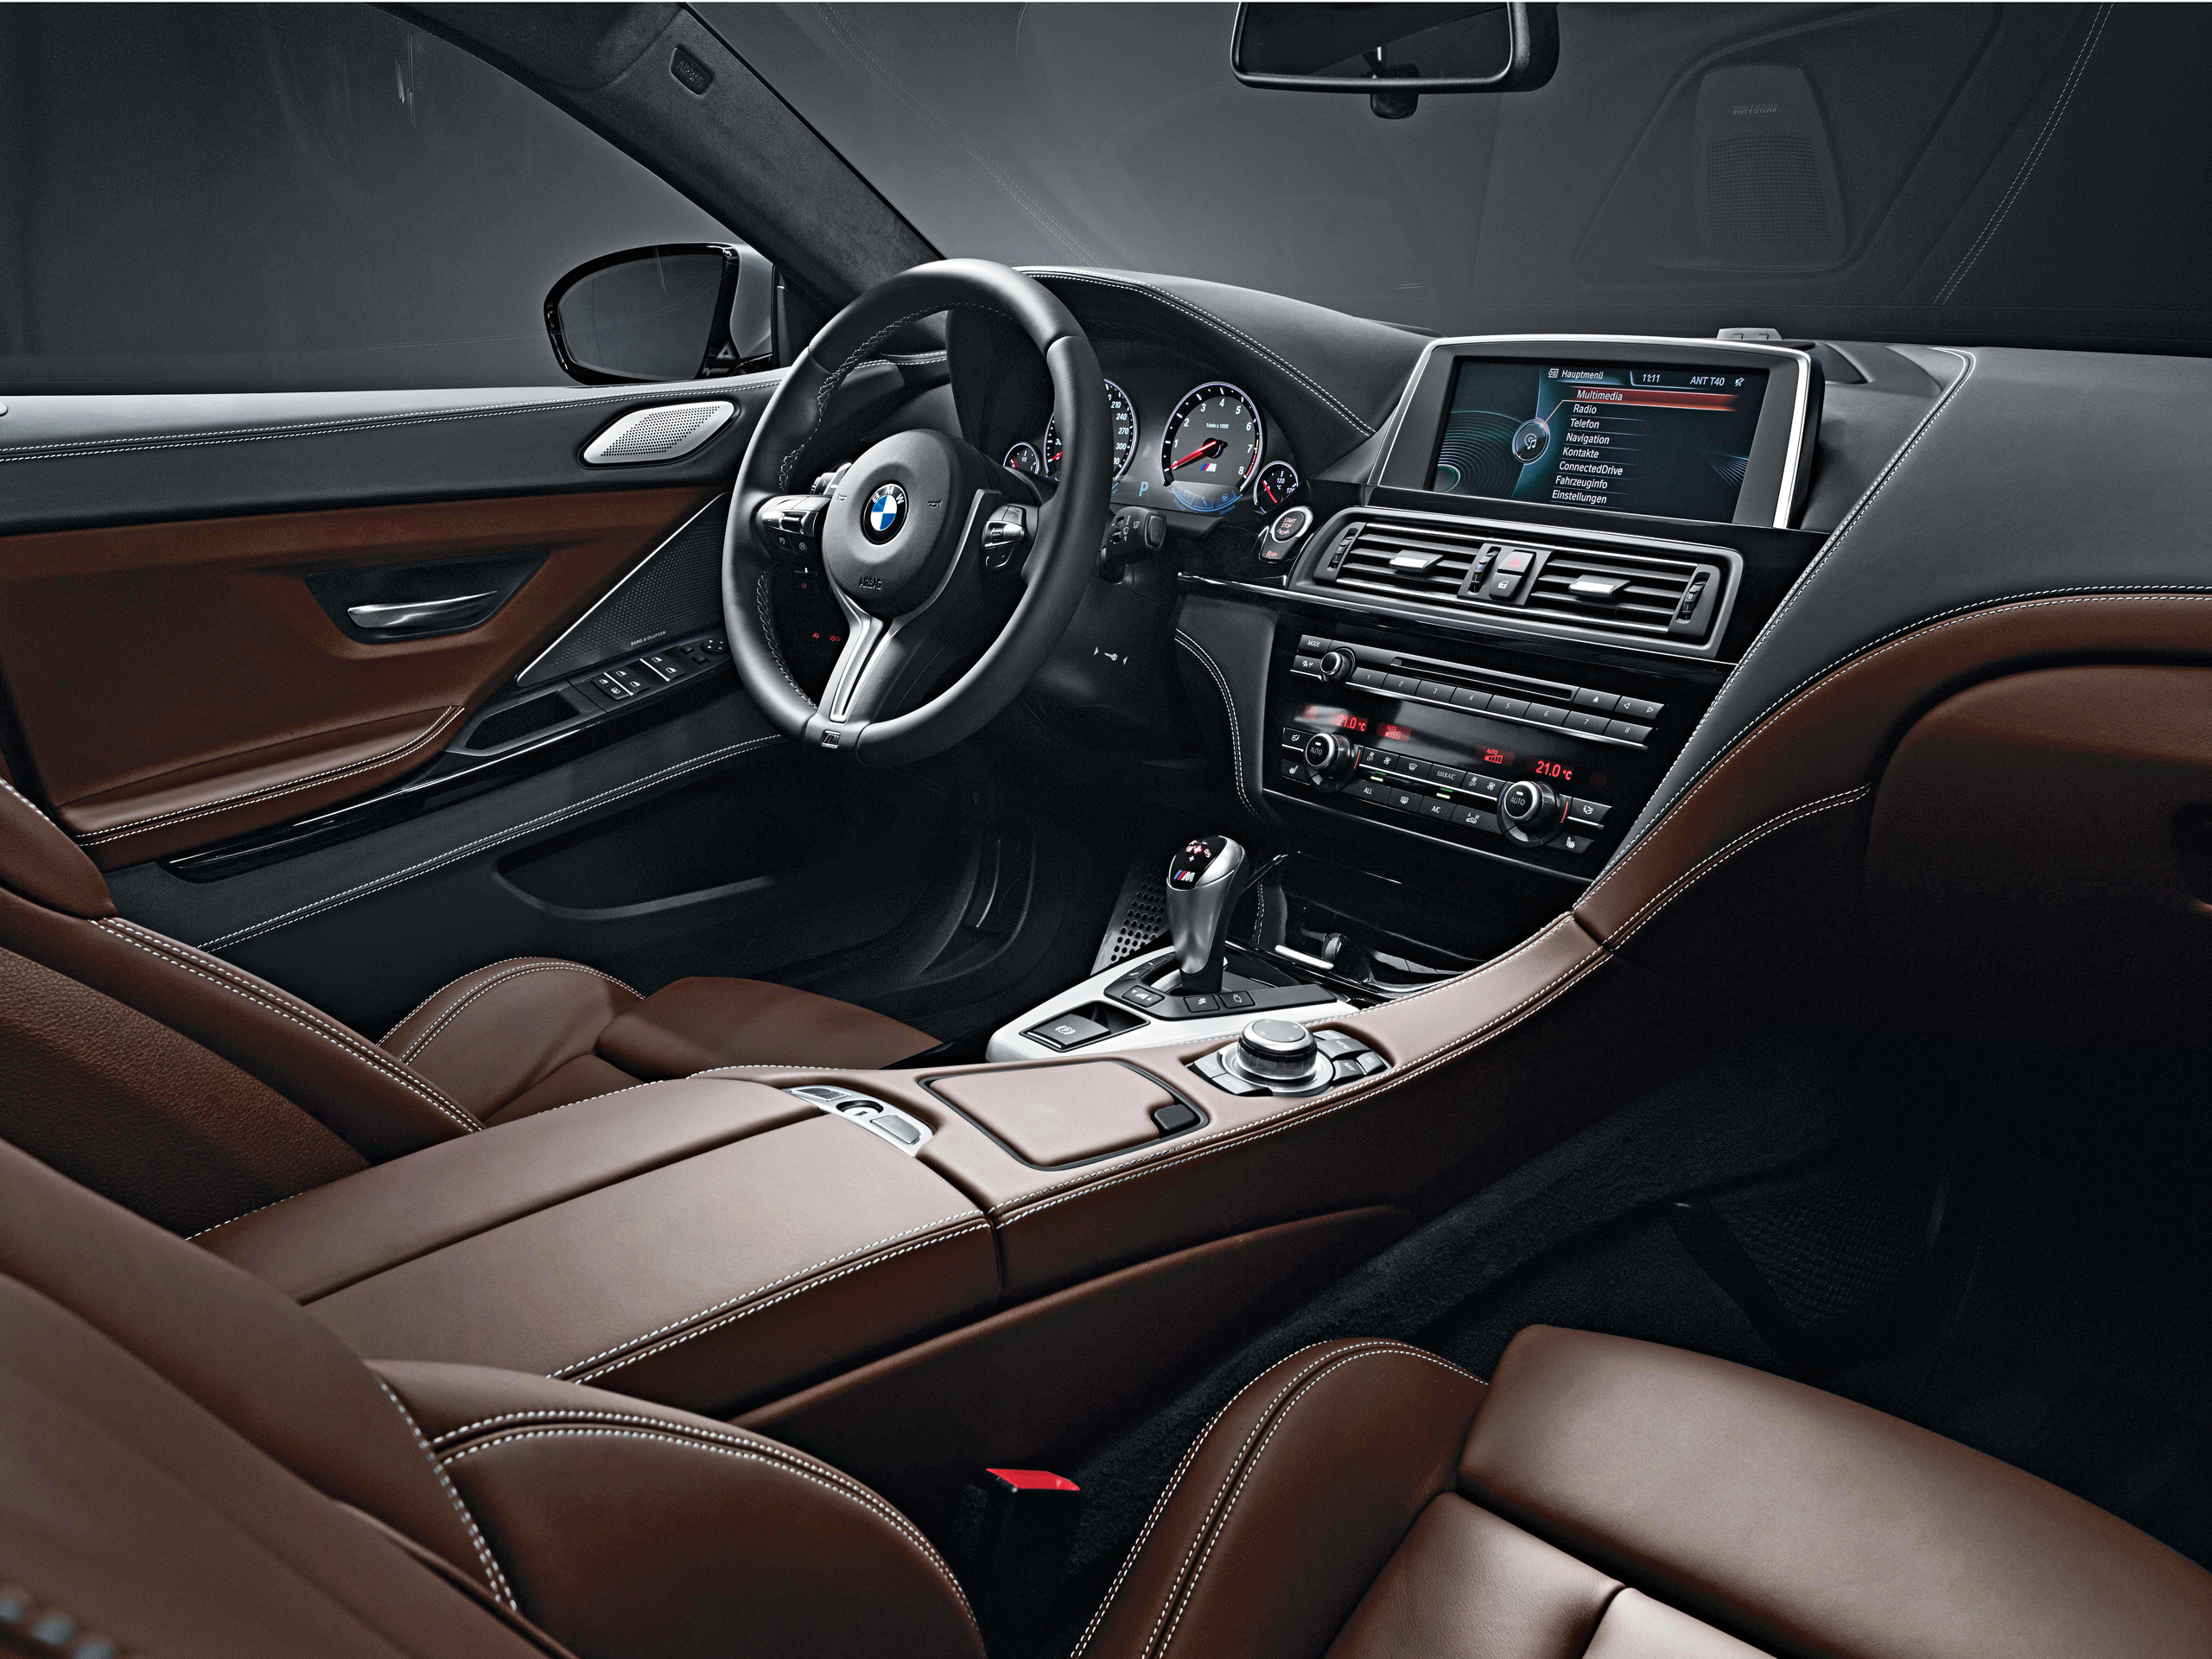 BMW M6 Gran Coupe: Test, Bilder und technische Daten